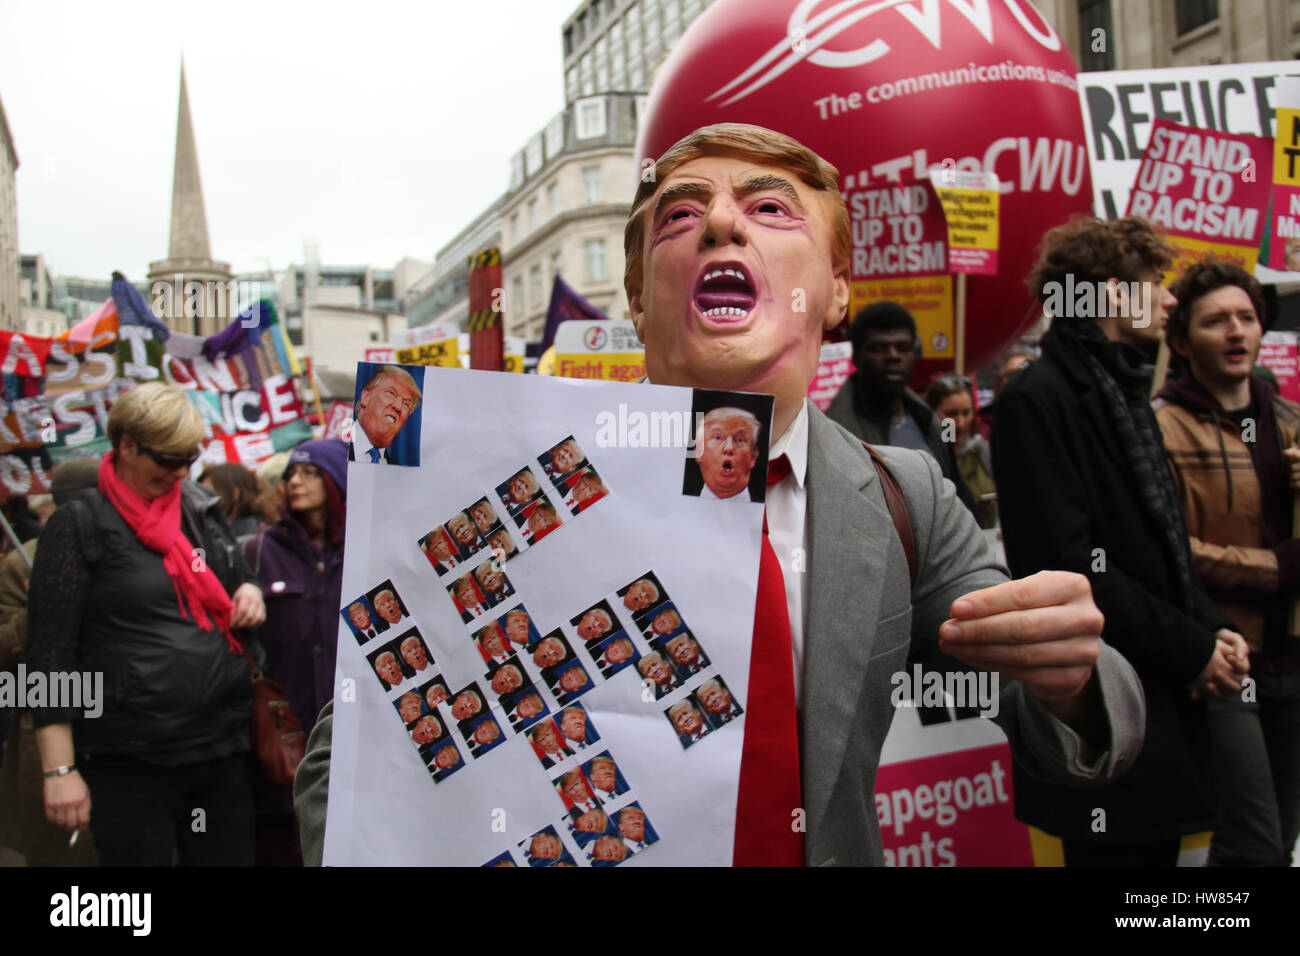 Londra, Regno Unito. Marzo 18, 2017: Un protestor con una maschera di briscola visto durante la fase di stand fino al razzismo dimostrazione sulle Nazioni Unite Anti-Racism giorno per le strade di Londra il 18 marzo 2017. Il mese di marzo ha cominciato a Portland Place (BBC) e si è conclusa a Piazza del Parlamento, dove un rally è pianificato. L'ONU Anti-Racism Day è una giornata di azione globale contro il razzismo in tutte le sue forme. © David Mbiyu/Alamy Live News Foto Stock